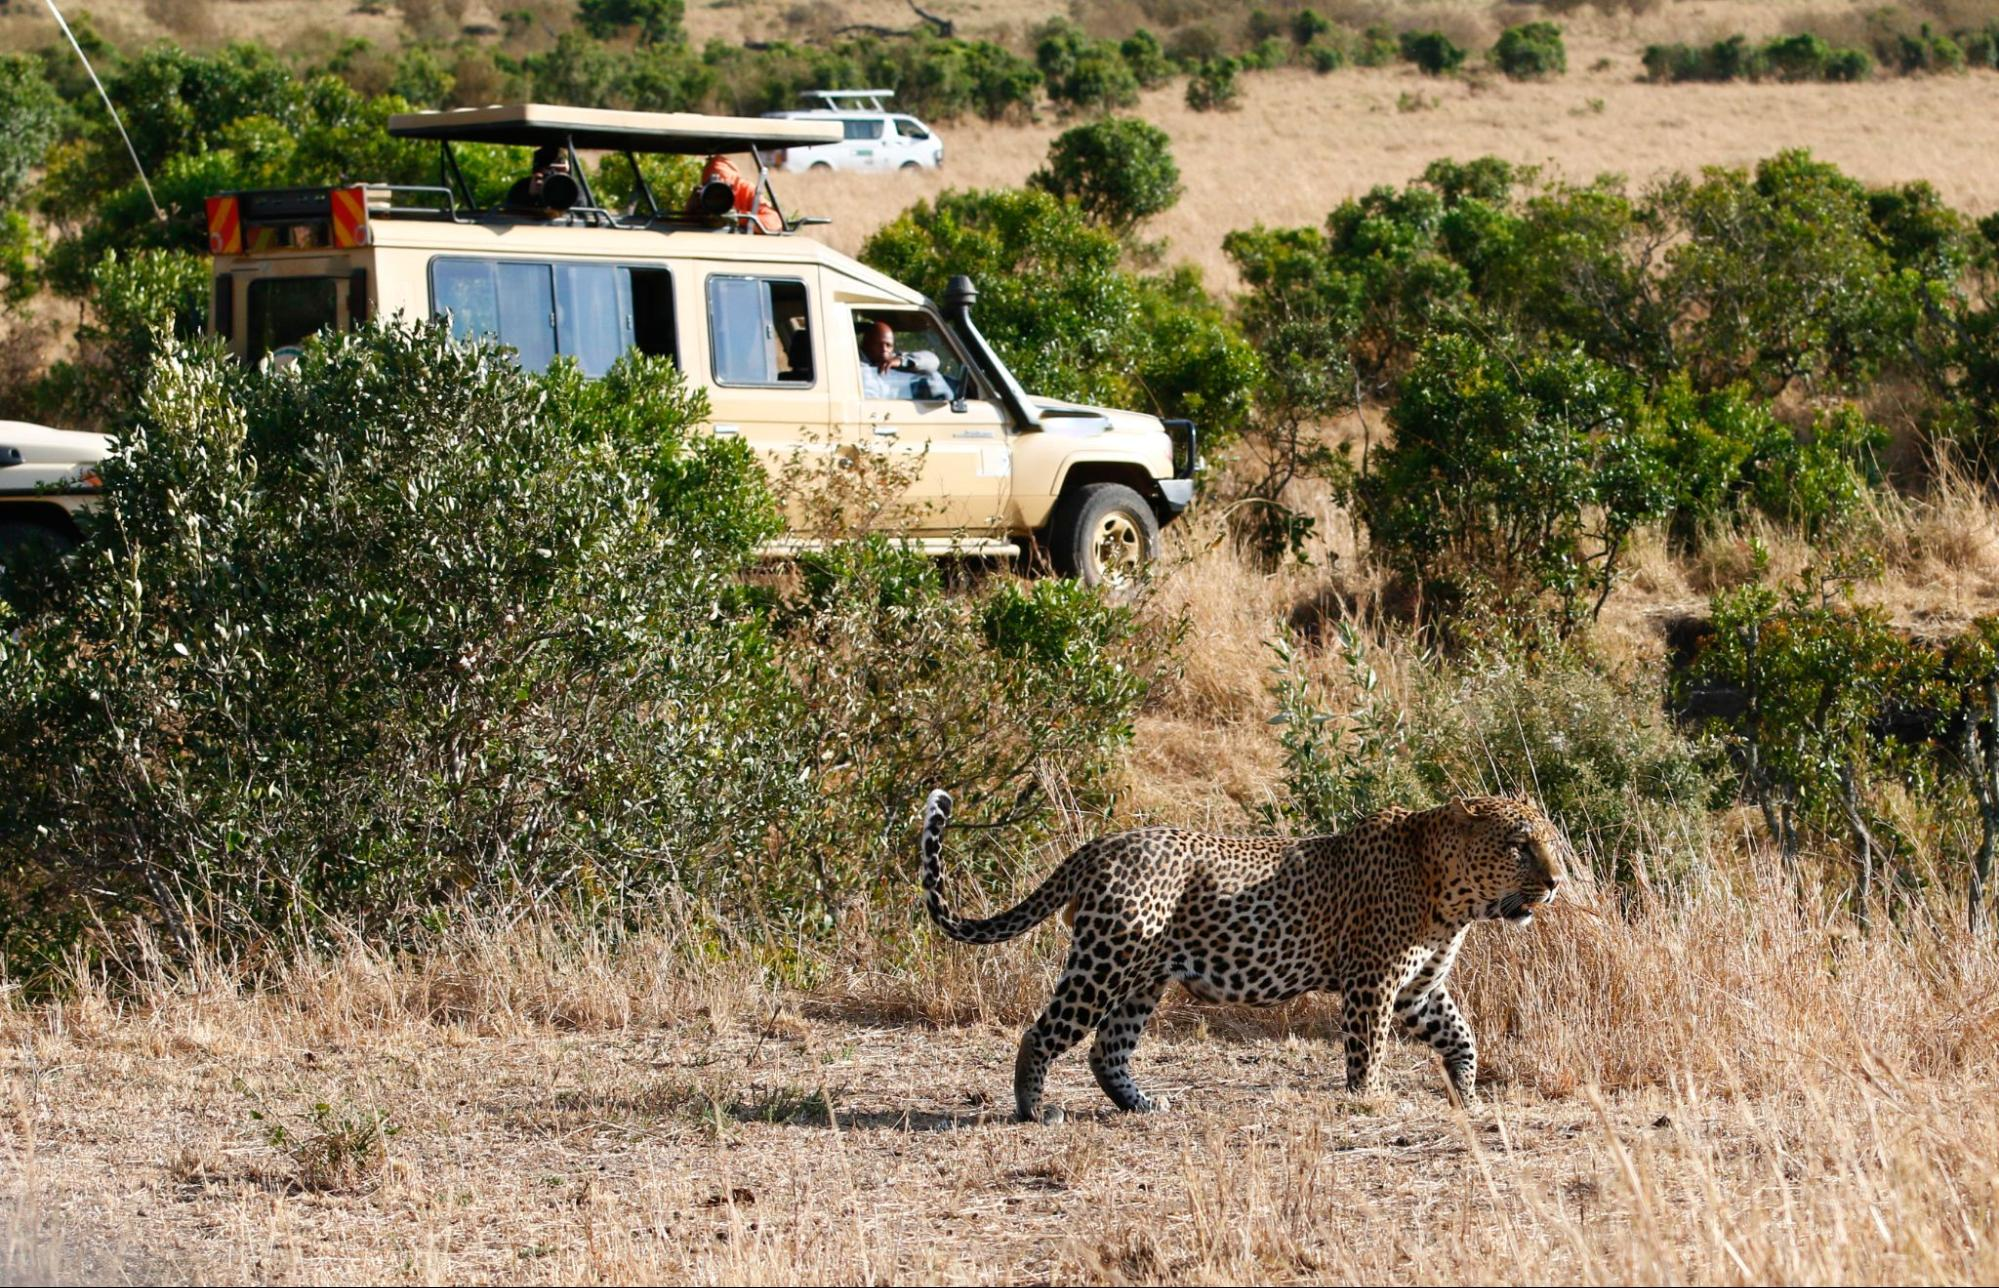 Big 5 safari to the Masai Mara National Park - a leopard in Masai Mara Kenya